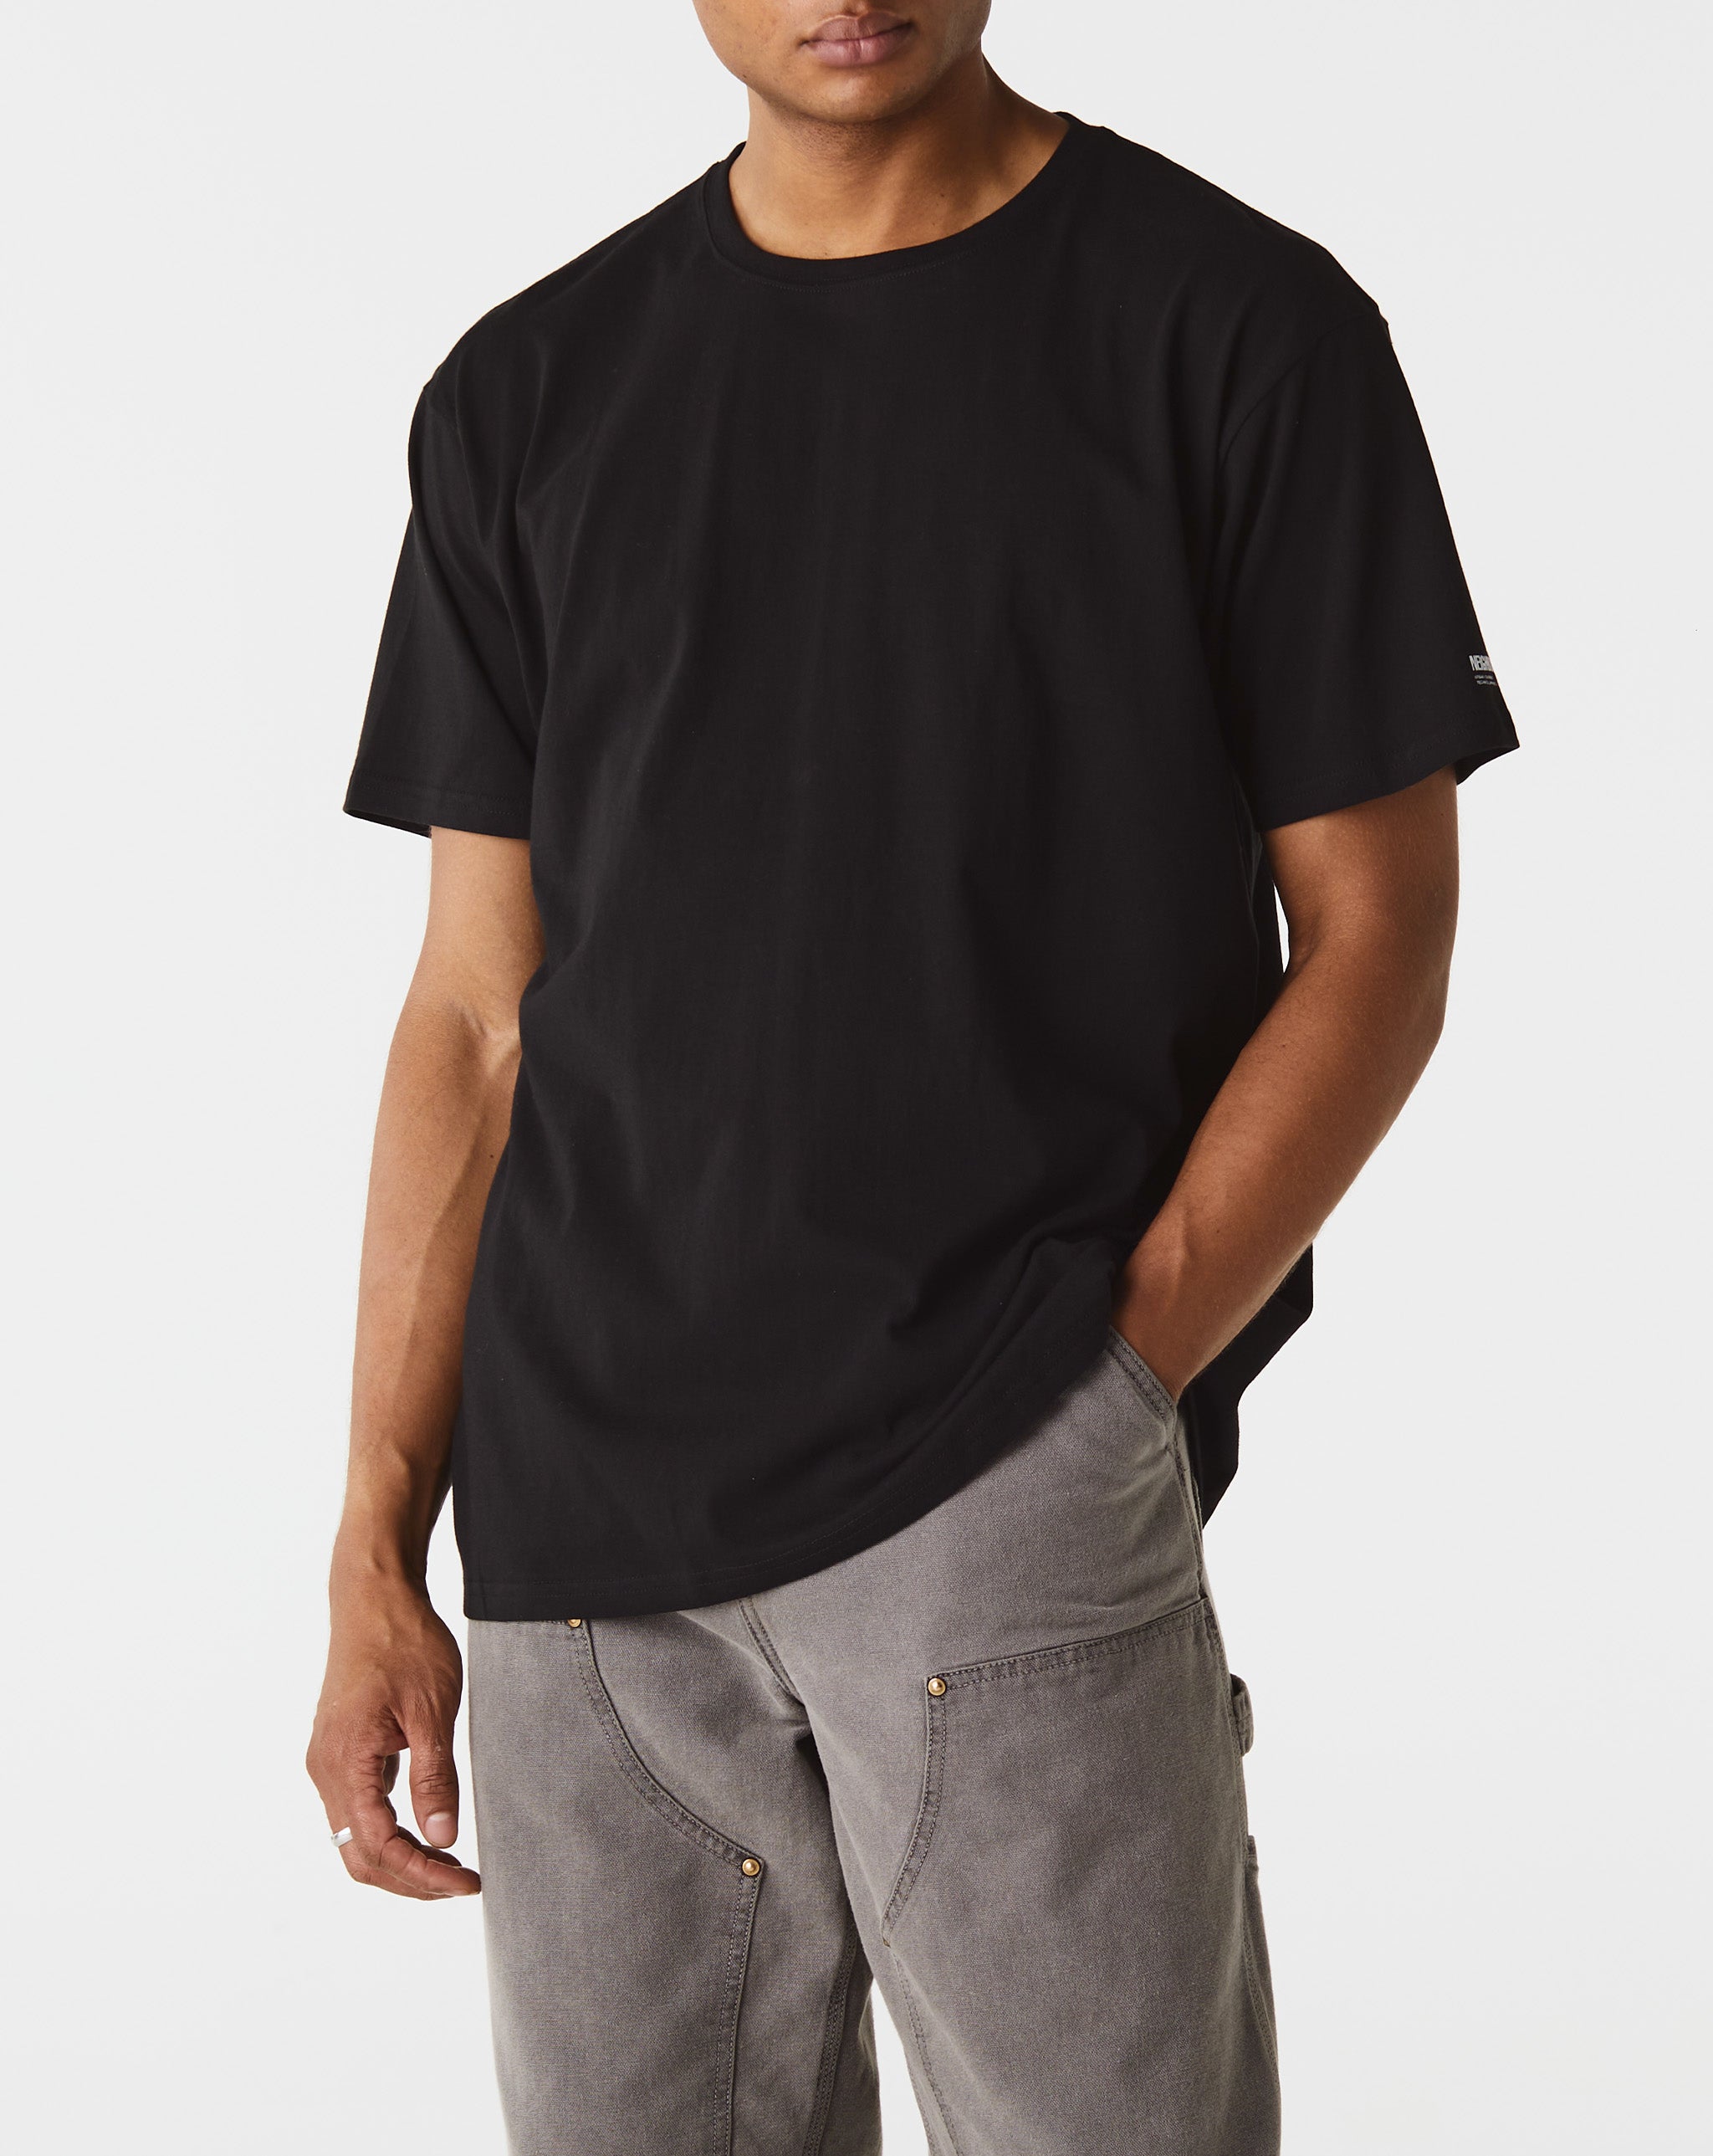 Neighborhood Graphic T-Shirt #1  - Cheap Urlfreeze Jordan outlet